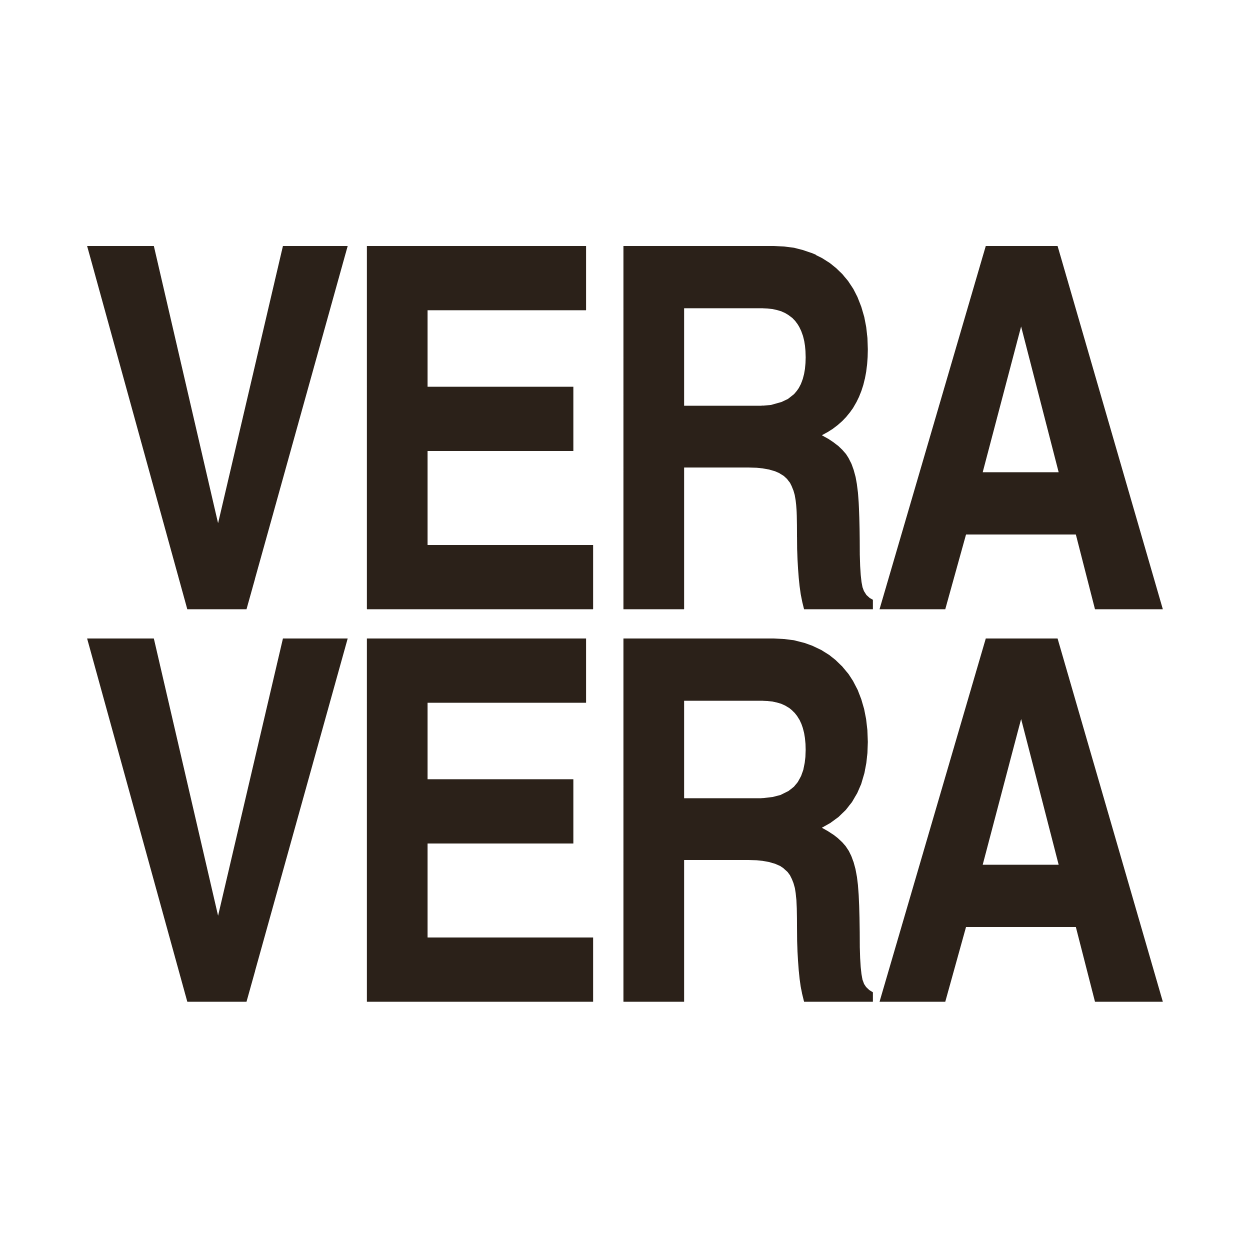 Vera Vera